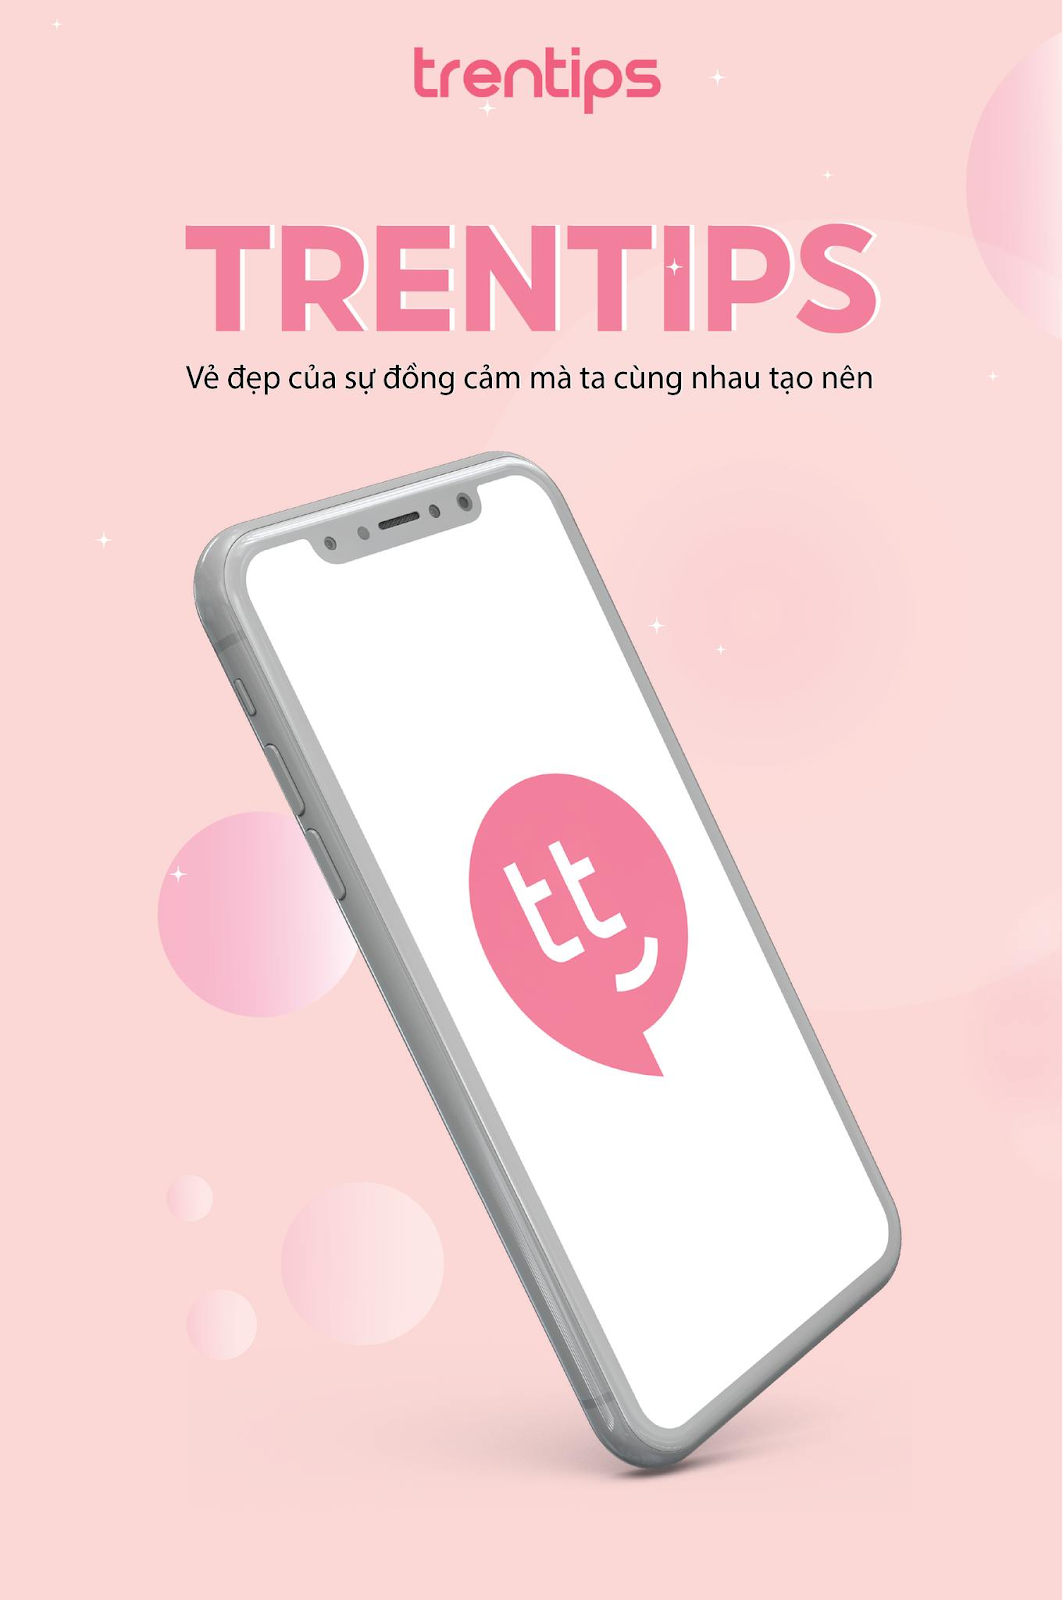 Trentips - Mẹo vặt làm đẹp: Đánh giá app Trentips. Có nên tải Trentips về điện thoại không? 25k6bUrMsU1UtaOB4aCuxl5mnj6NpMf2ZTeJfk5vzvX1x4opZ0YksX4UuyV4HOo7H-mOTQpZh8xepqfmPT_v5x3zF3oCuk7UUT6L2x68KShSarJy3XAYSXKw2aSYklqWg6msyHzq5yvkRublxOgnyeTSp8yf5WQrY4vVNuXgTv6zbBysAop6zjsSpA